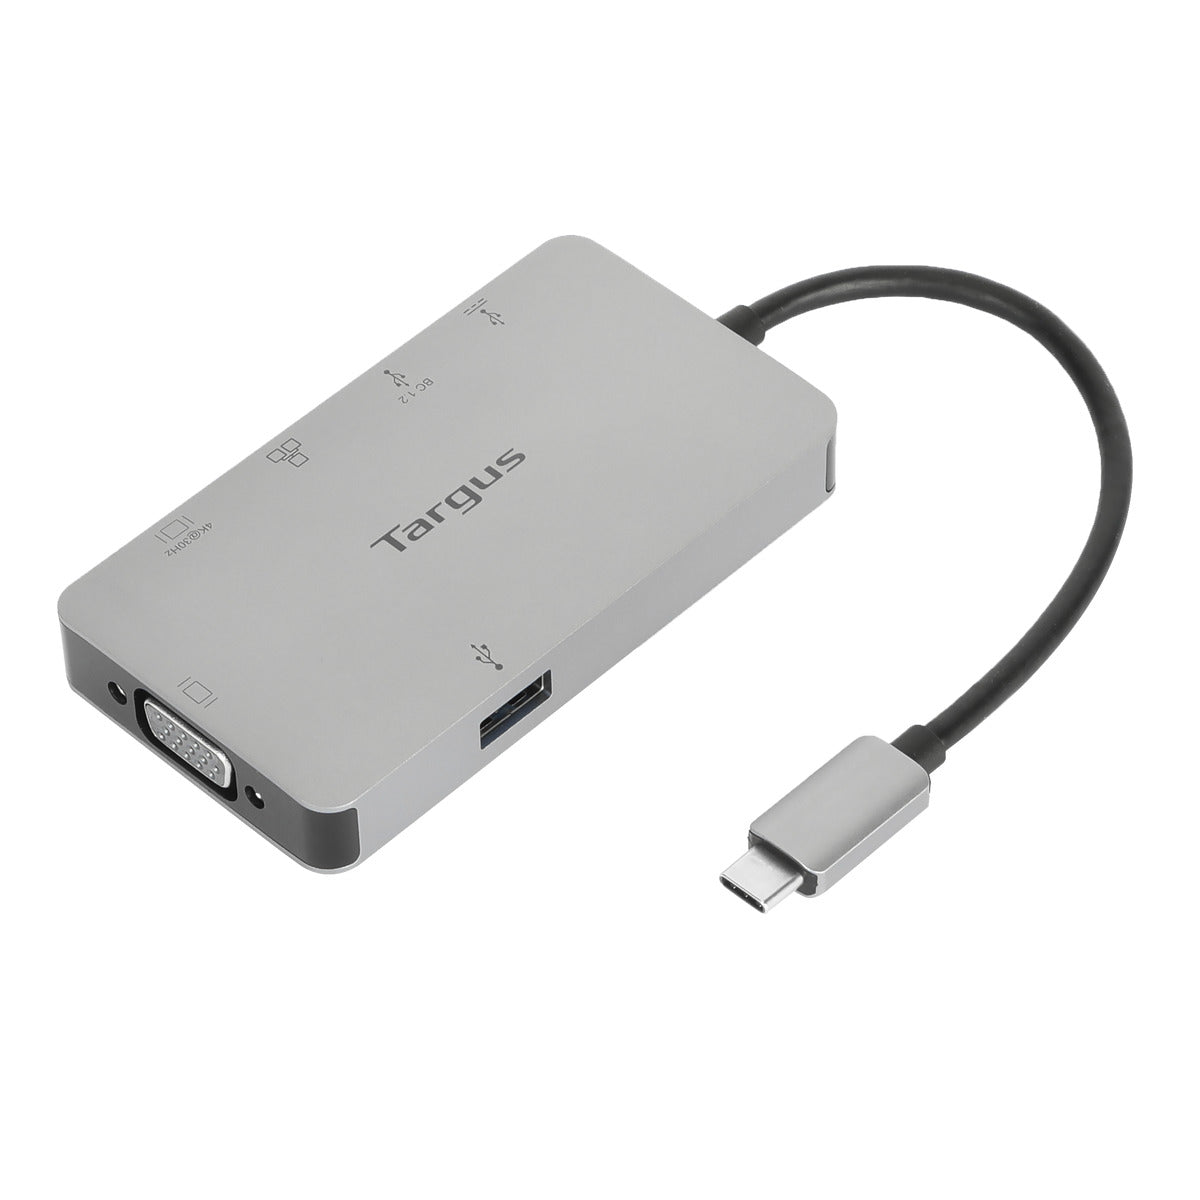 Targus DOCK419 USB-C Docking Station 擴充基座